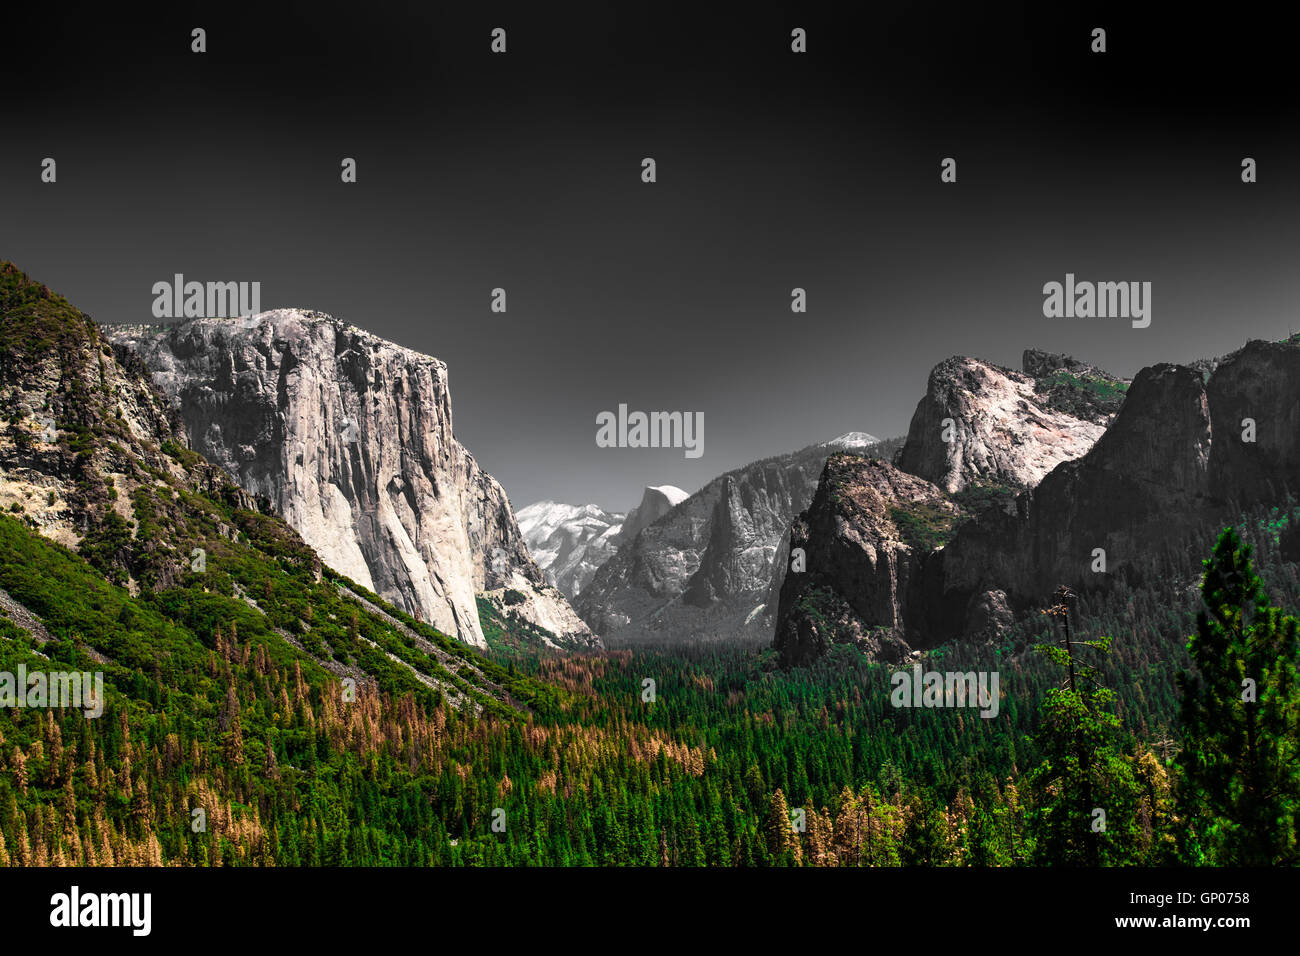 Représentation de dramatique sombre Yosemite National Park au célèbre vue sur la vallée avec El Captain Banque D'Images